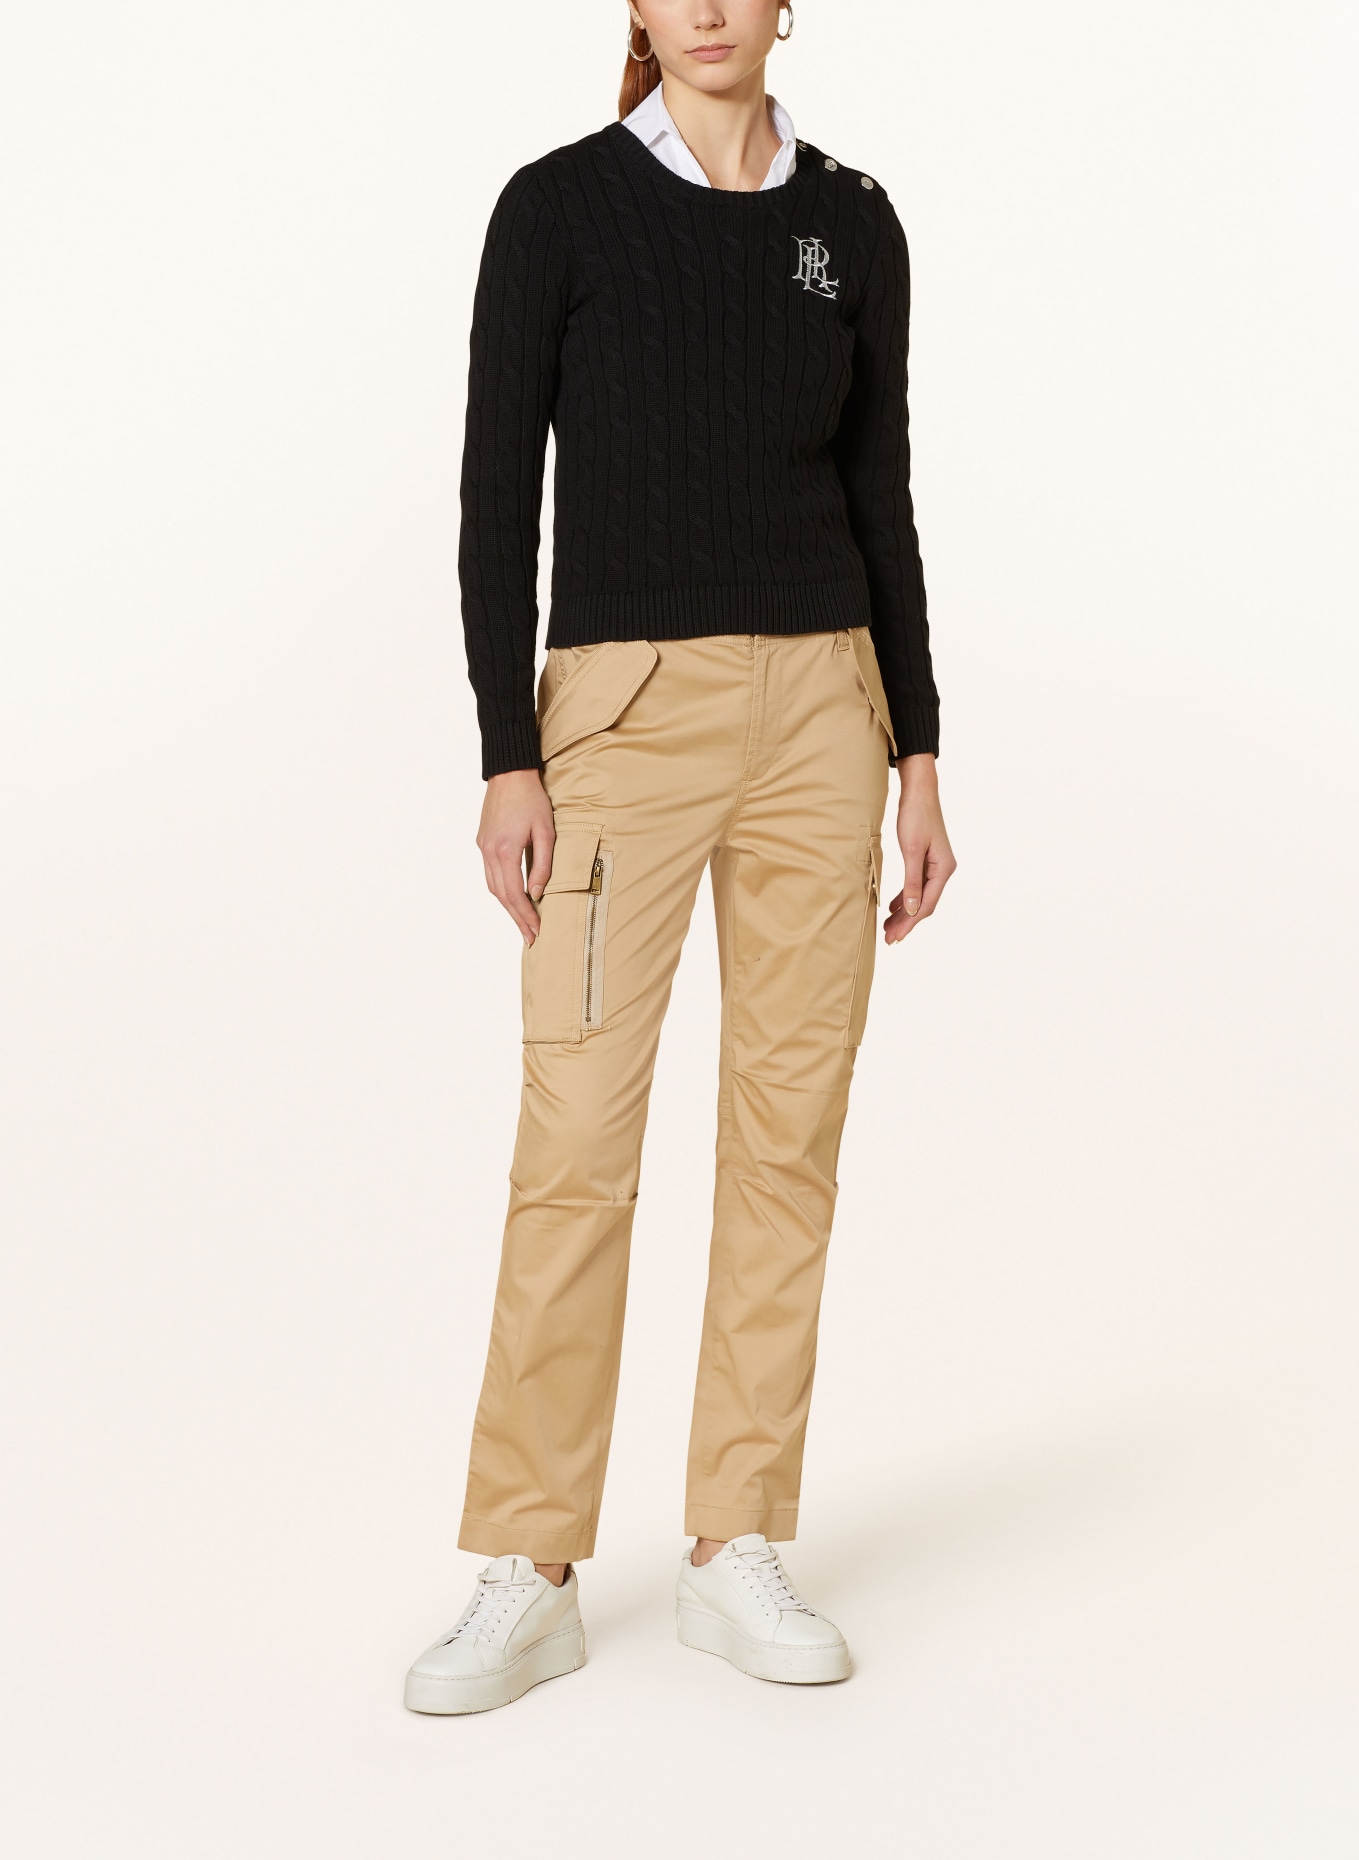 LAUREN RALPH LAUREN Sweater with glitter thread, Color: BLACK (Image 2)